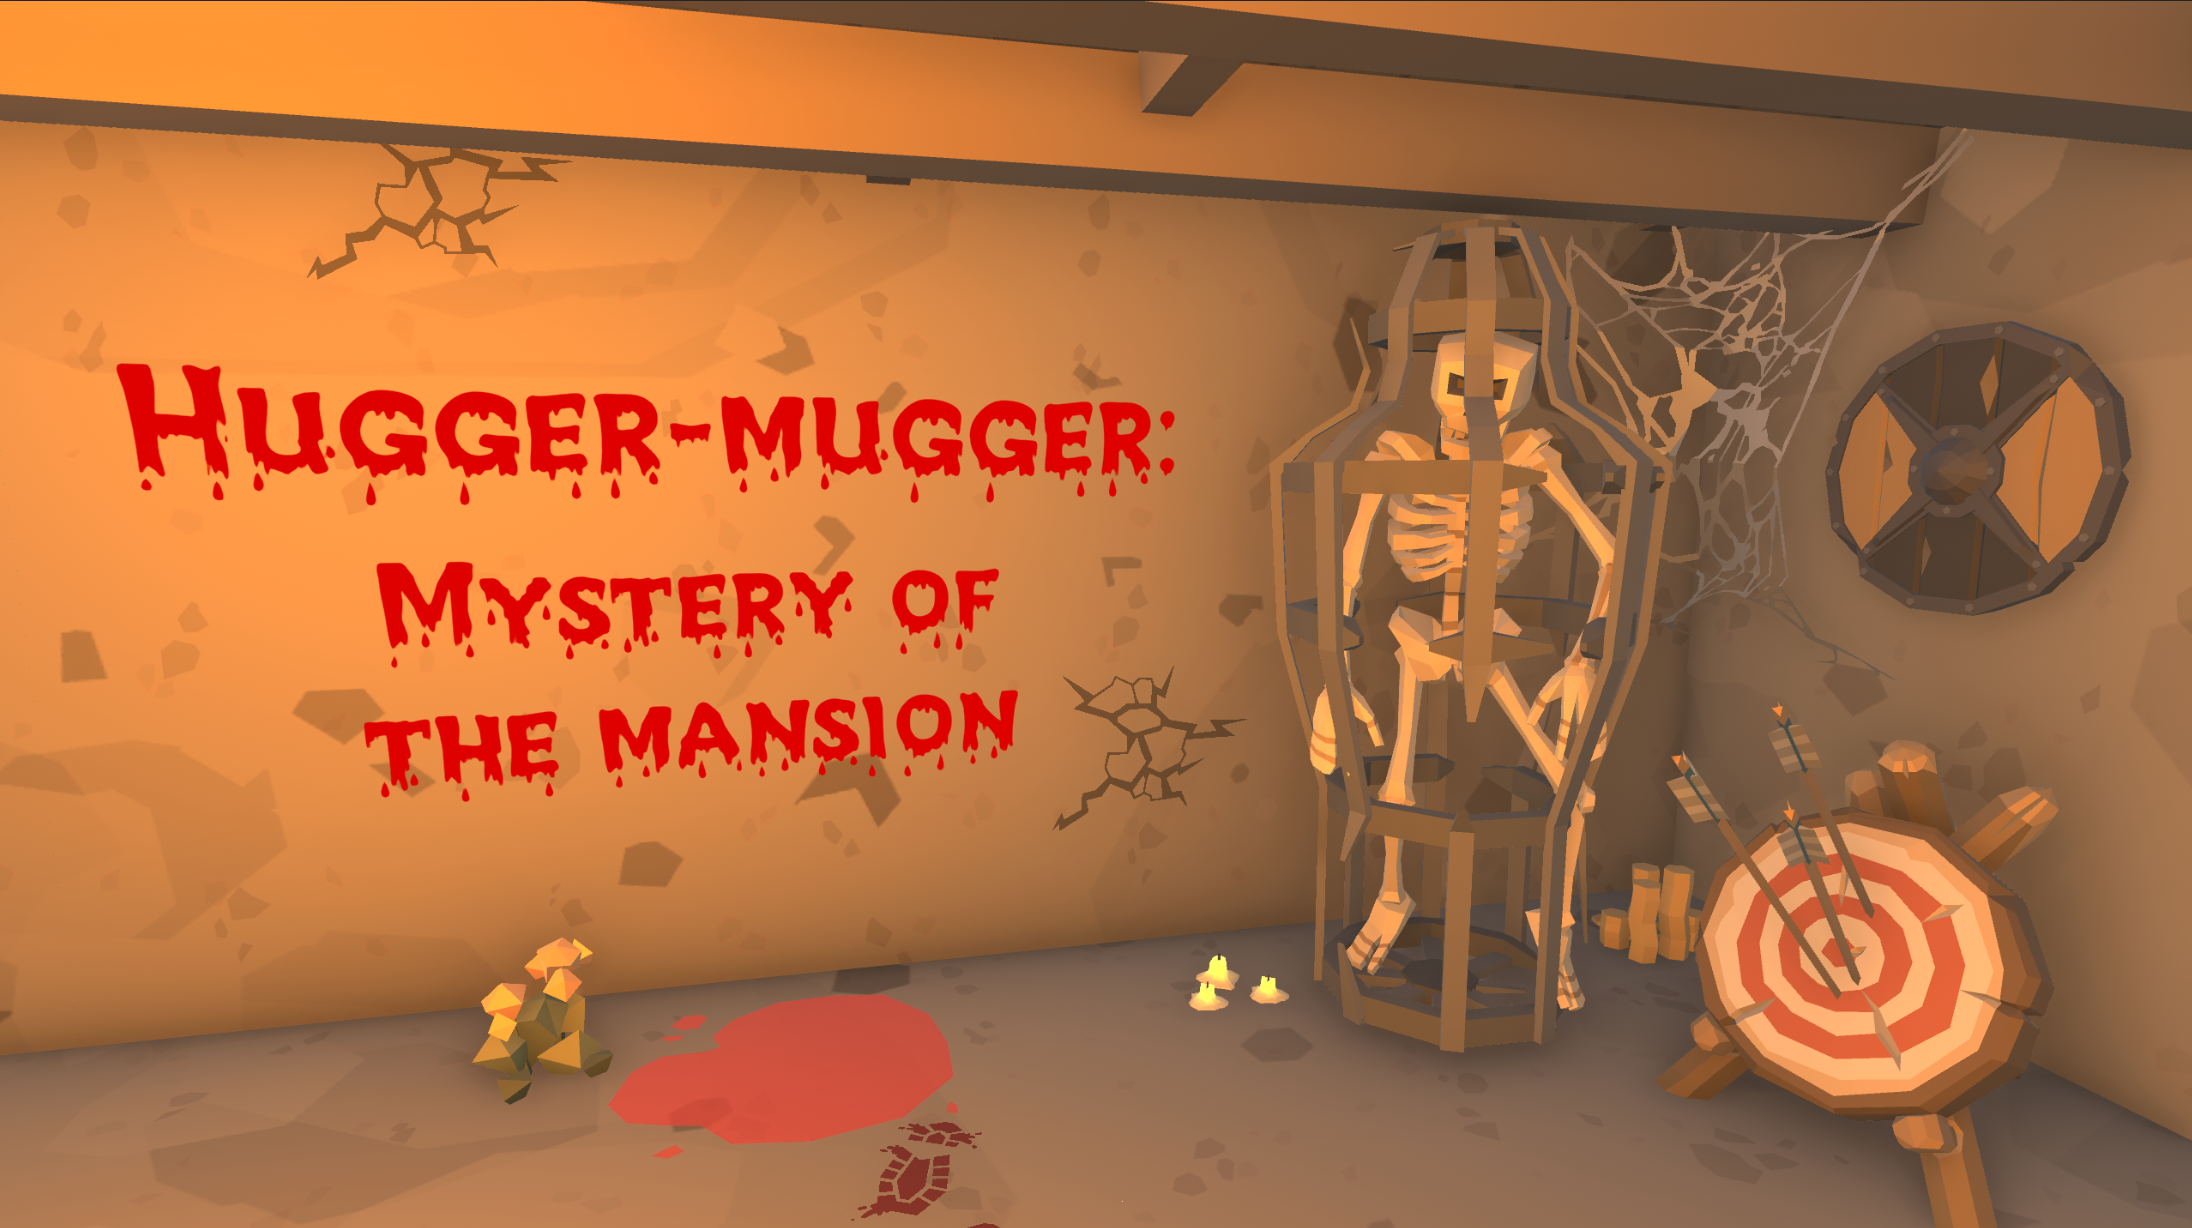 Hugger-mugger: Mystery of the mansion